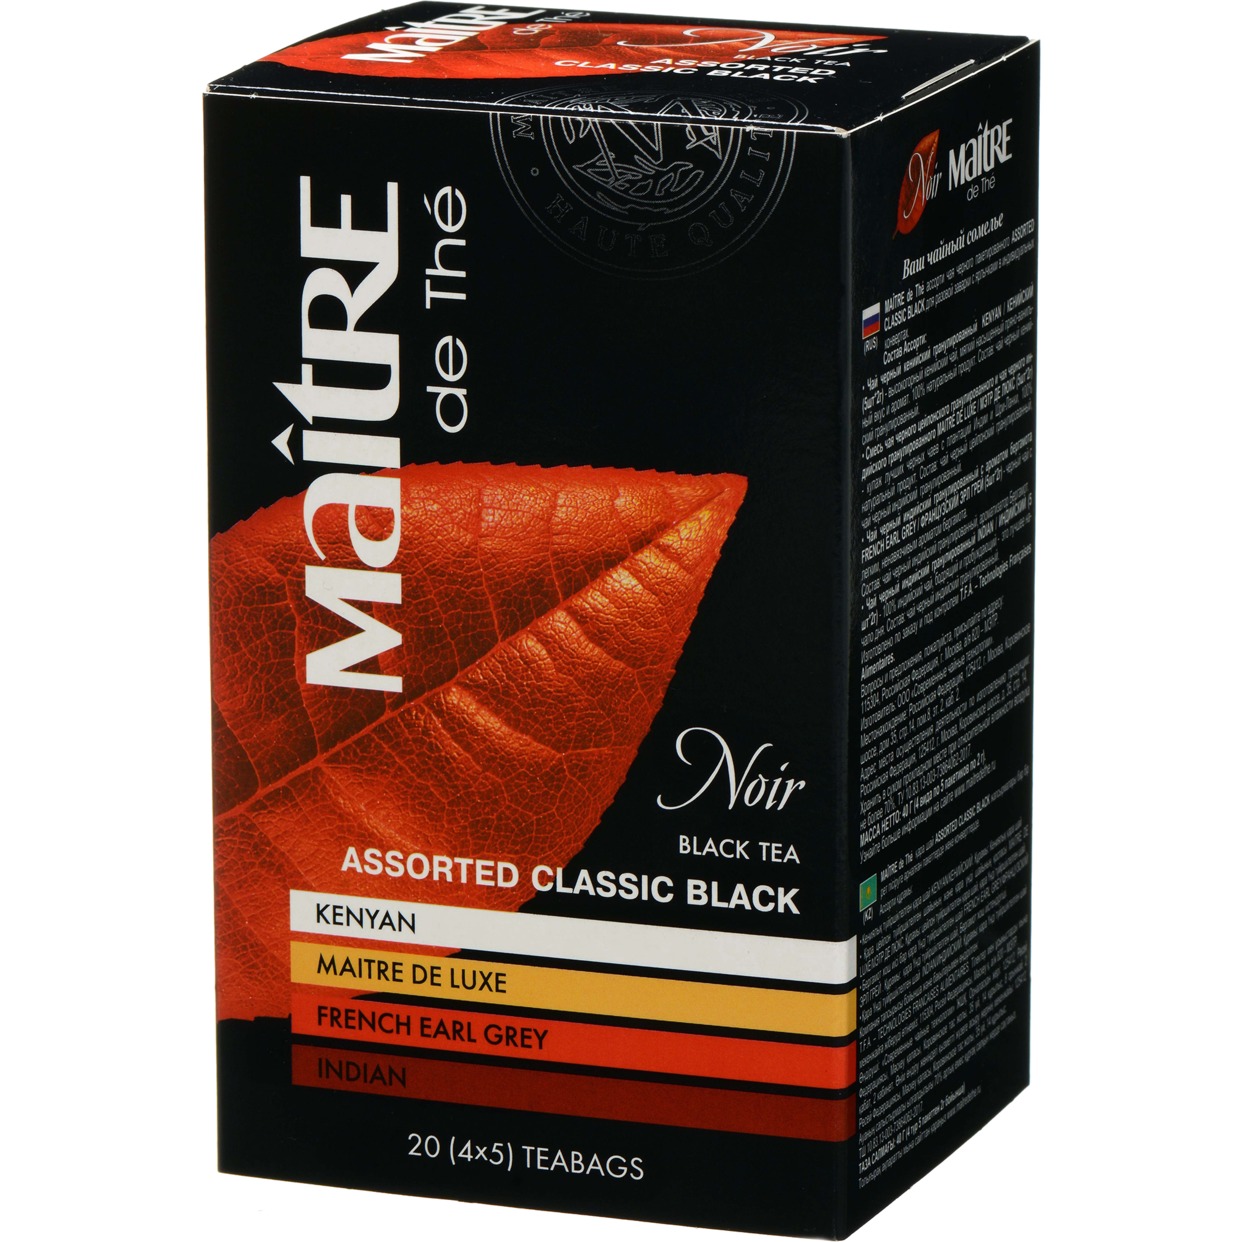 Ассорти чая чёрного пакетированного ASSORTED CLASSIC BLACK "Maitre de the" 20пак*2г (нетто 40г). по акции в Пятерочке